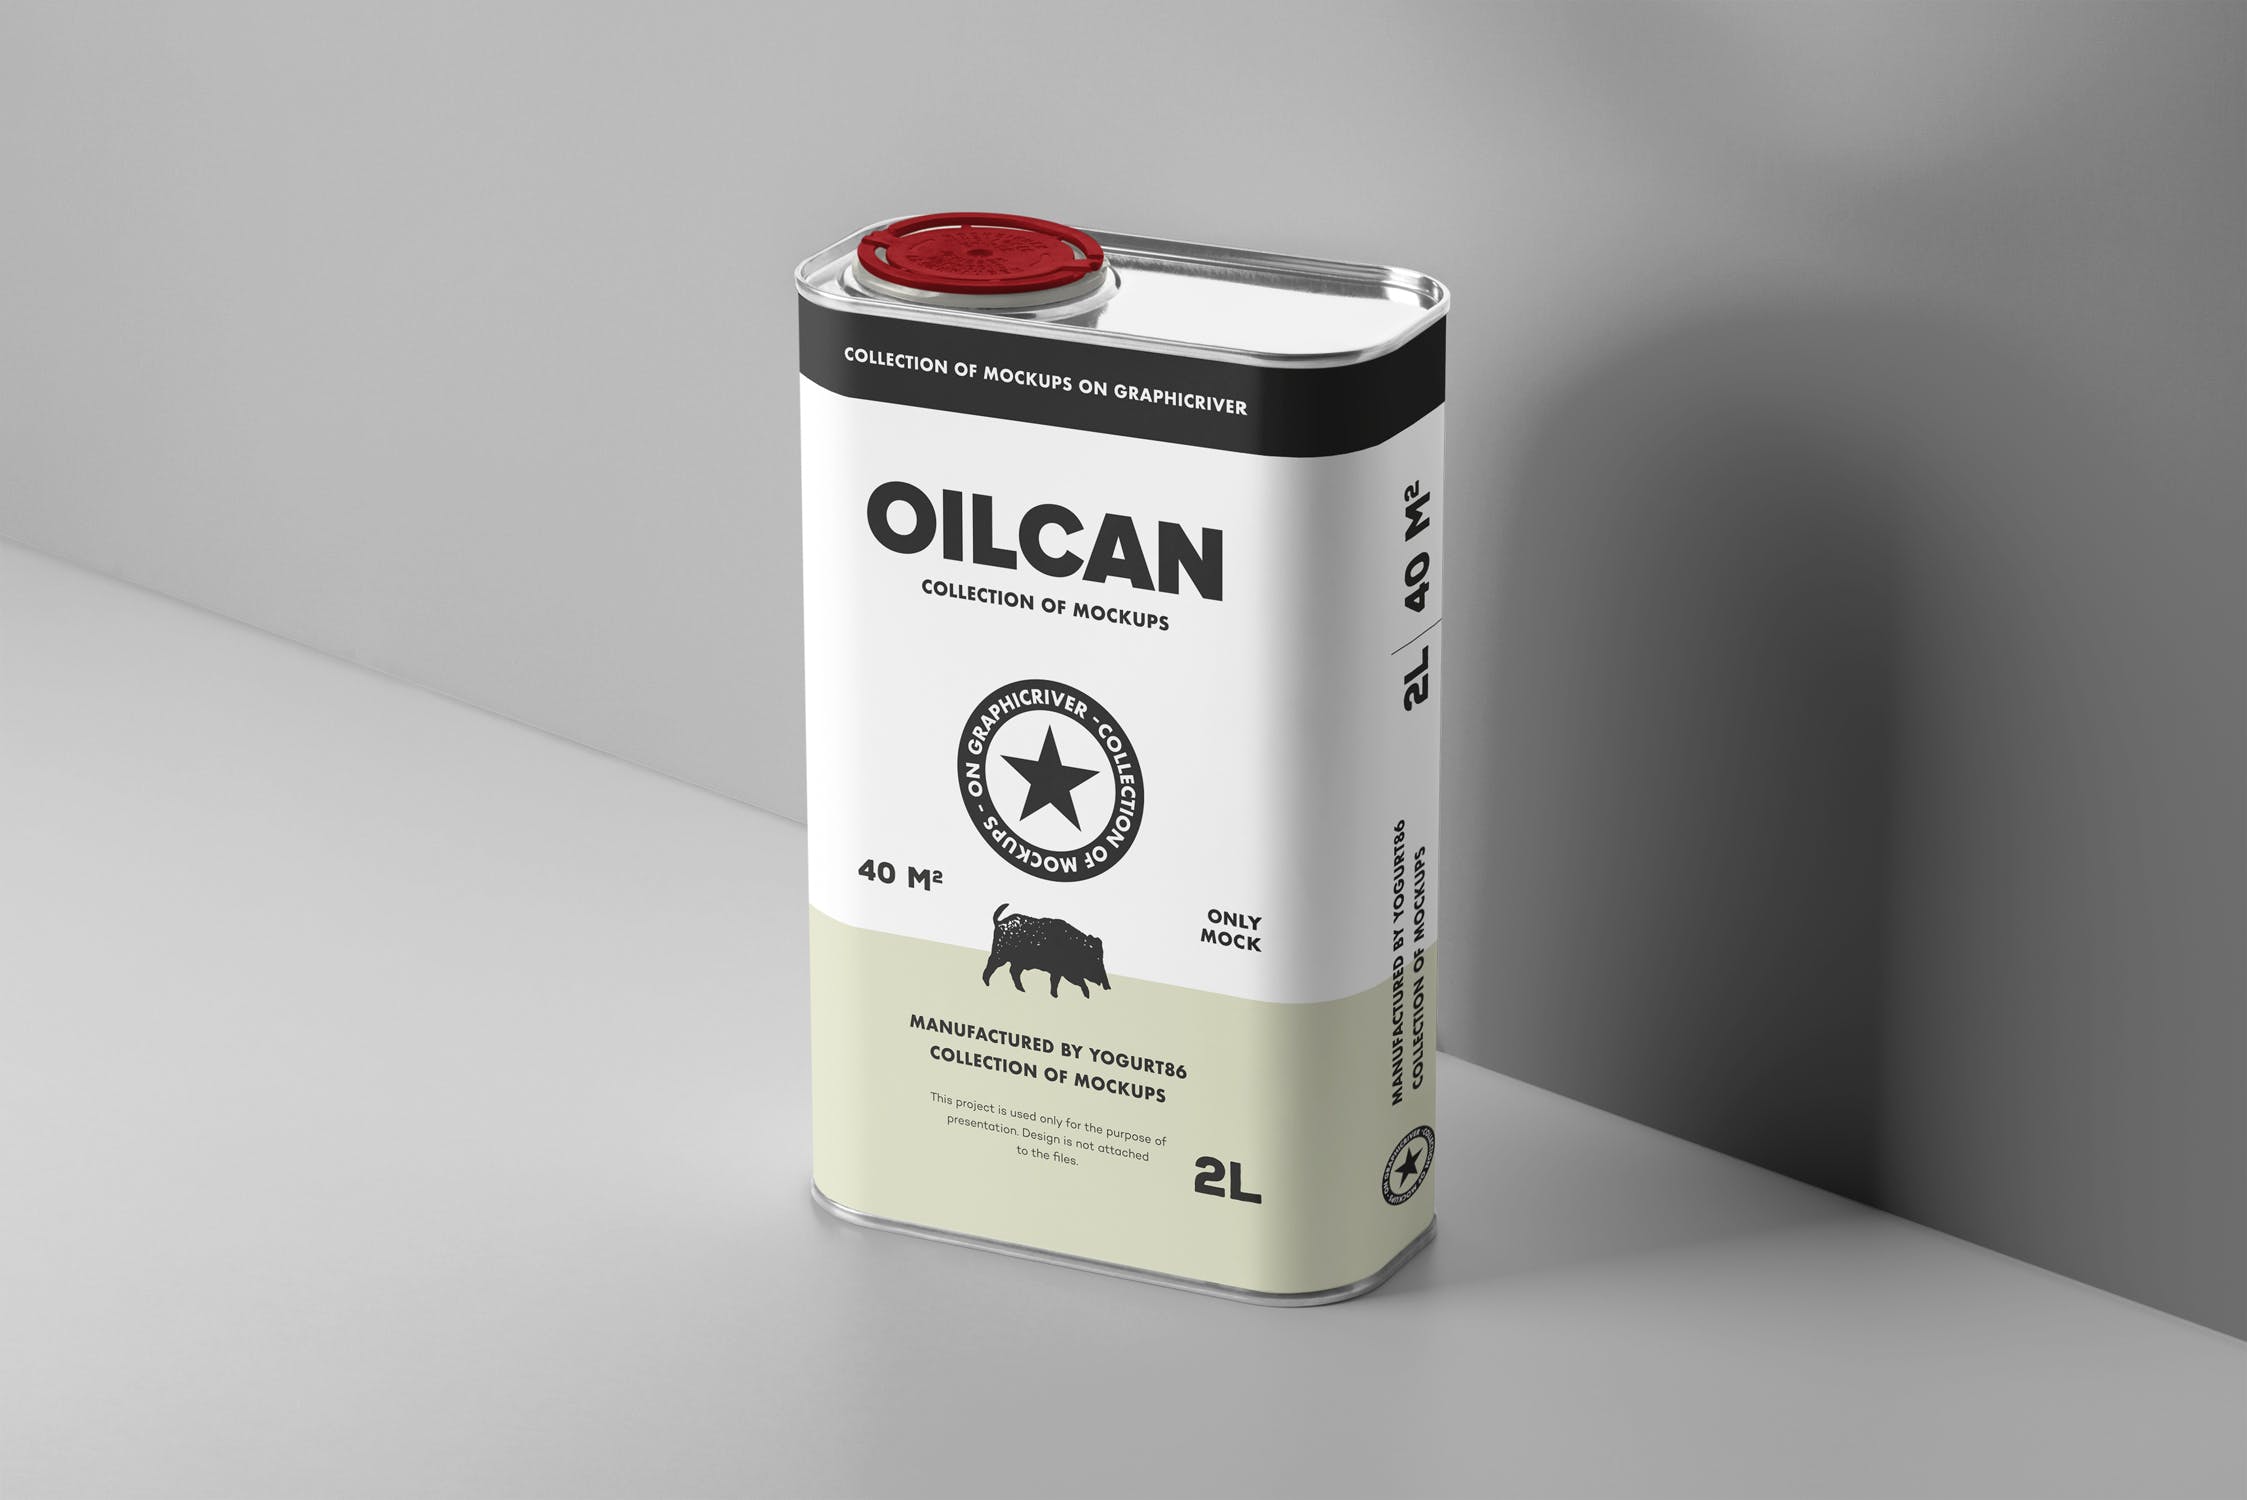 方形油罐外观设计图第一素材精选模板 Oil Can Mock-up插图(4)